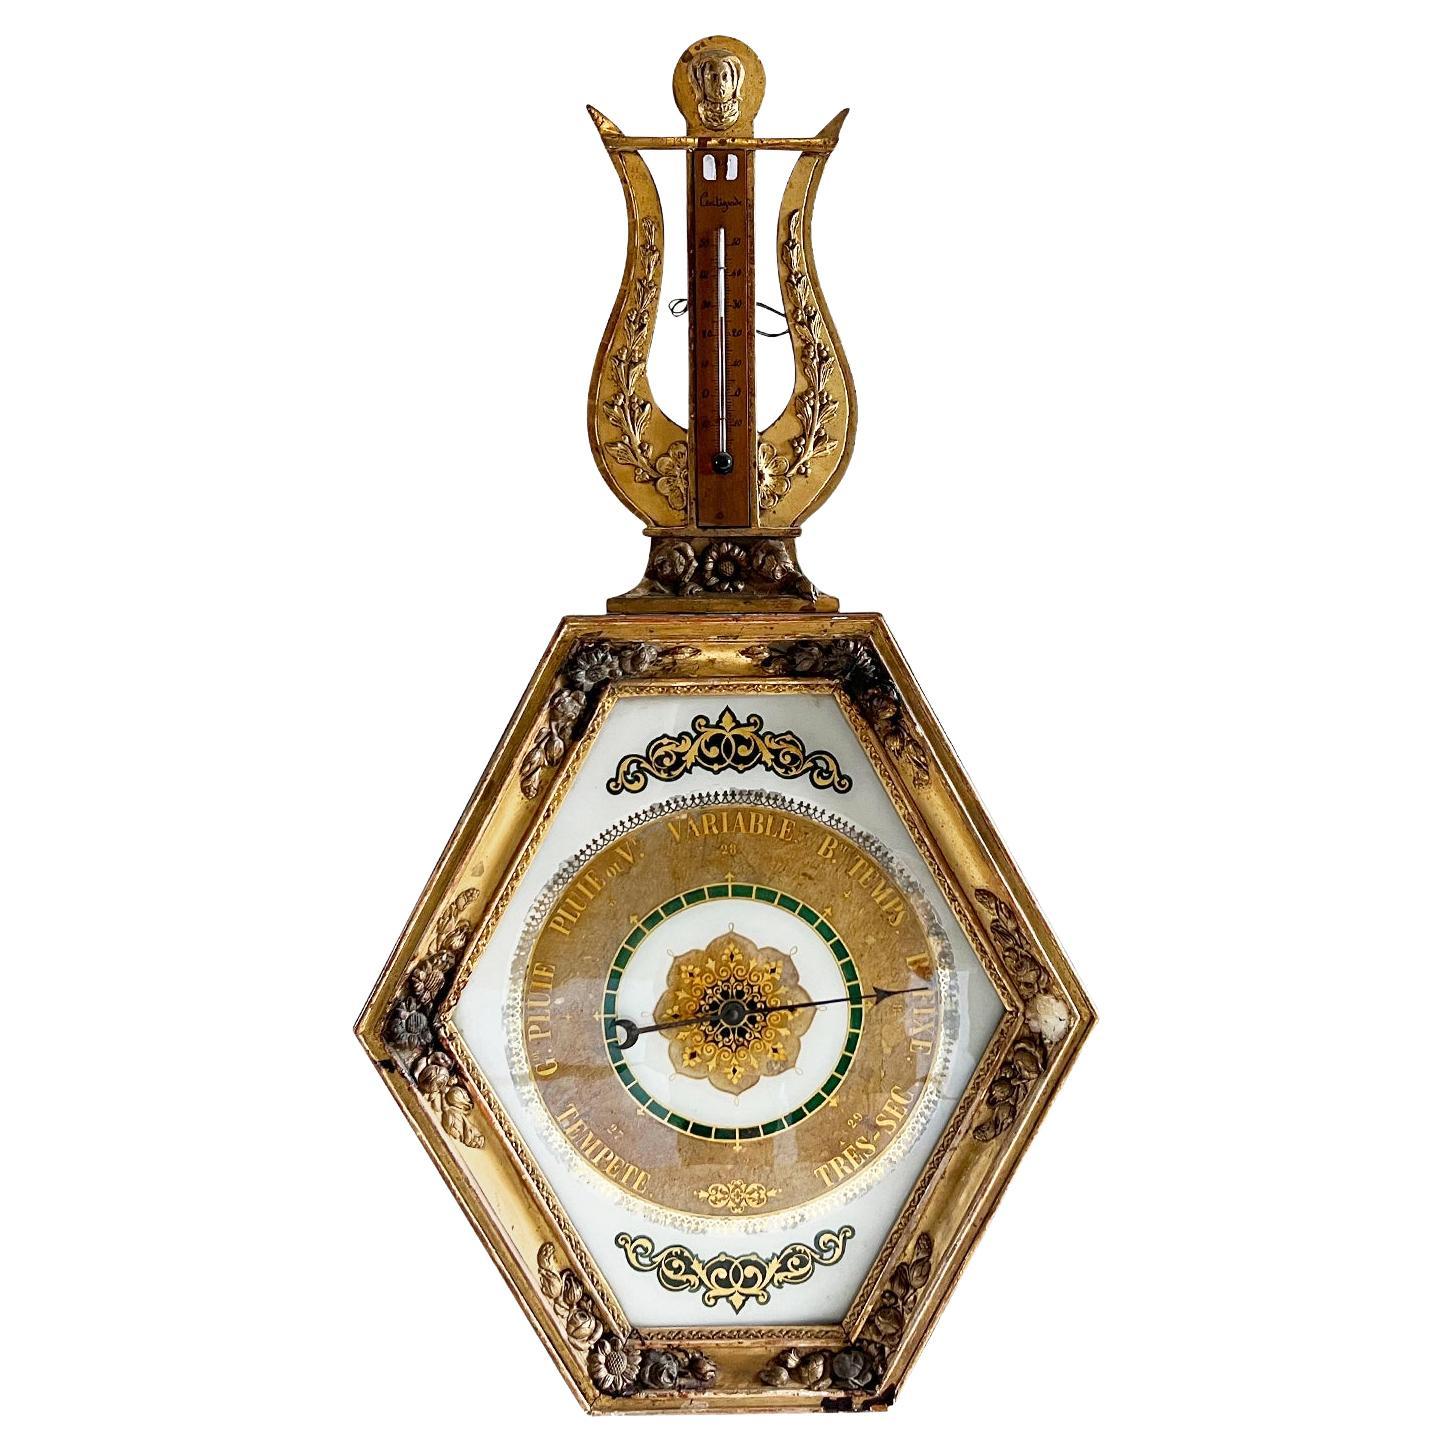 Baromètre français du 18ème siècle en bois doré et or - thermomètre parisien ancien